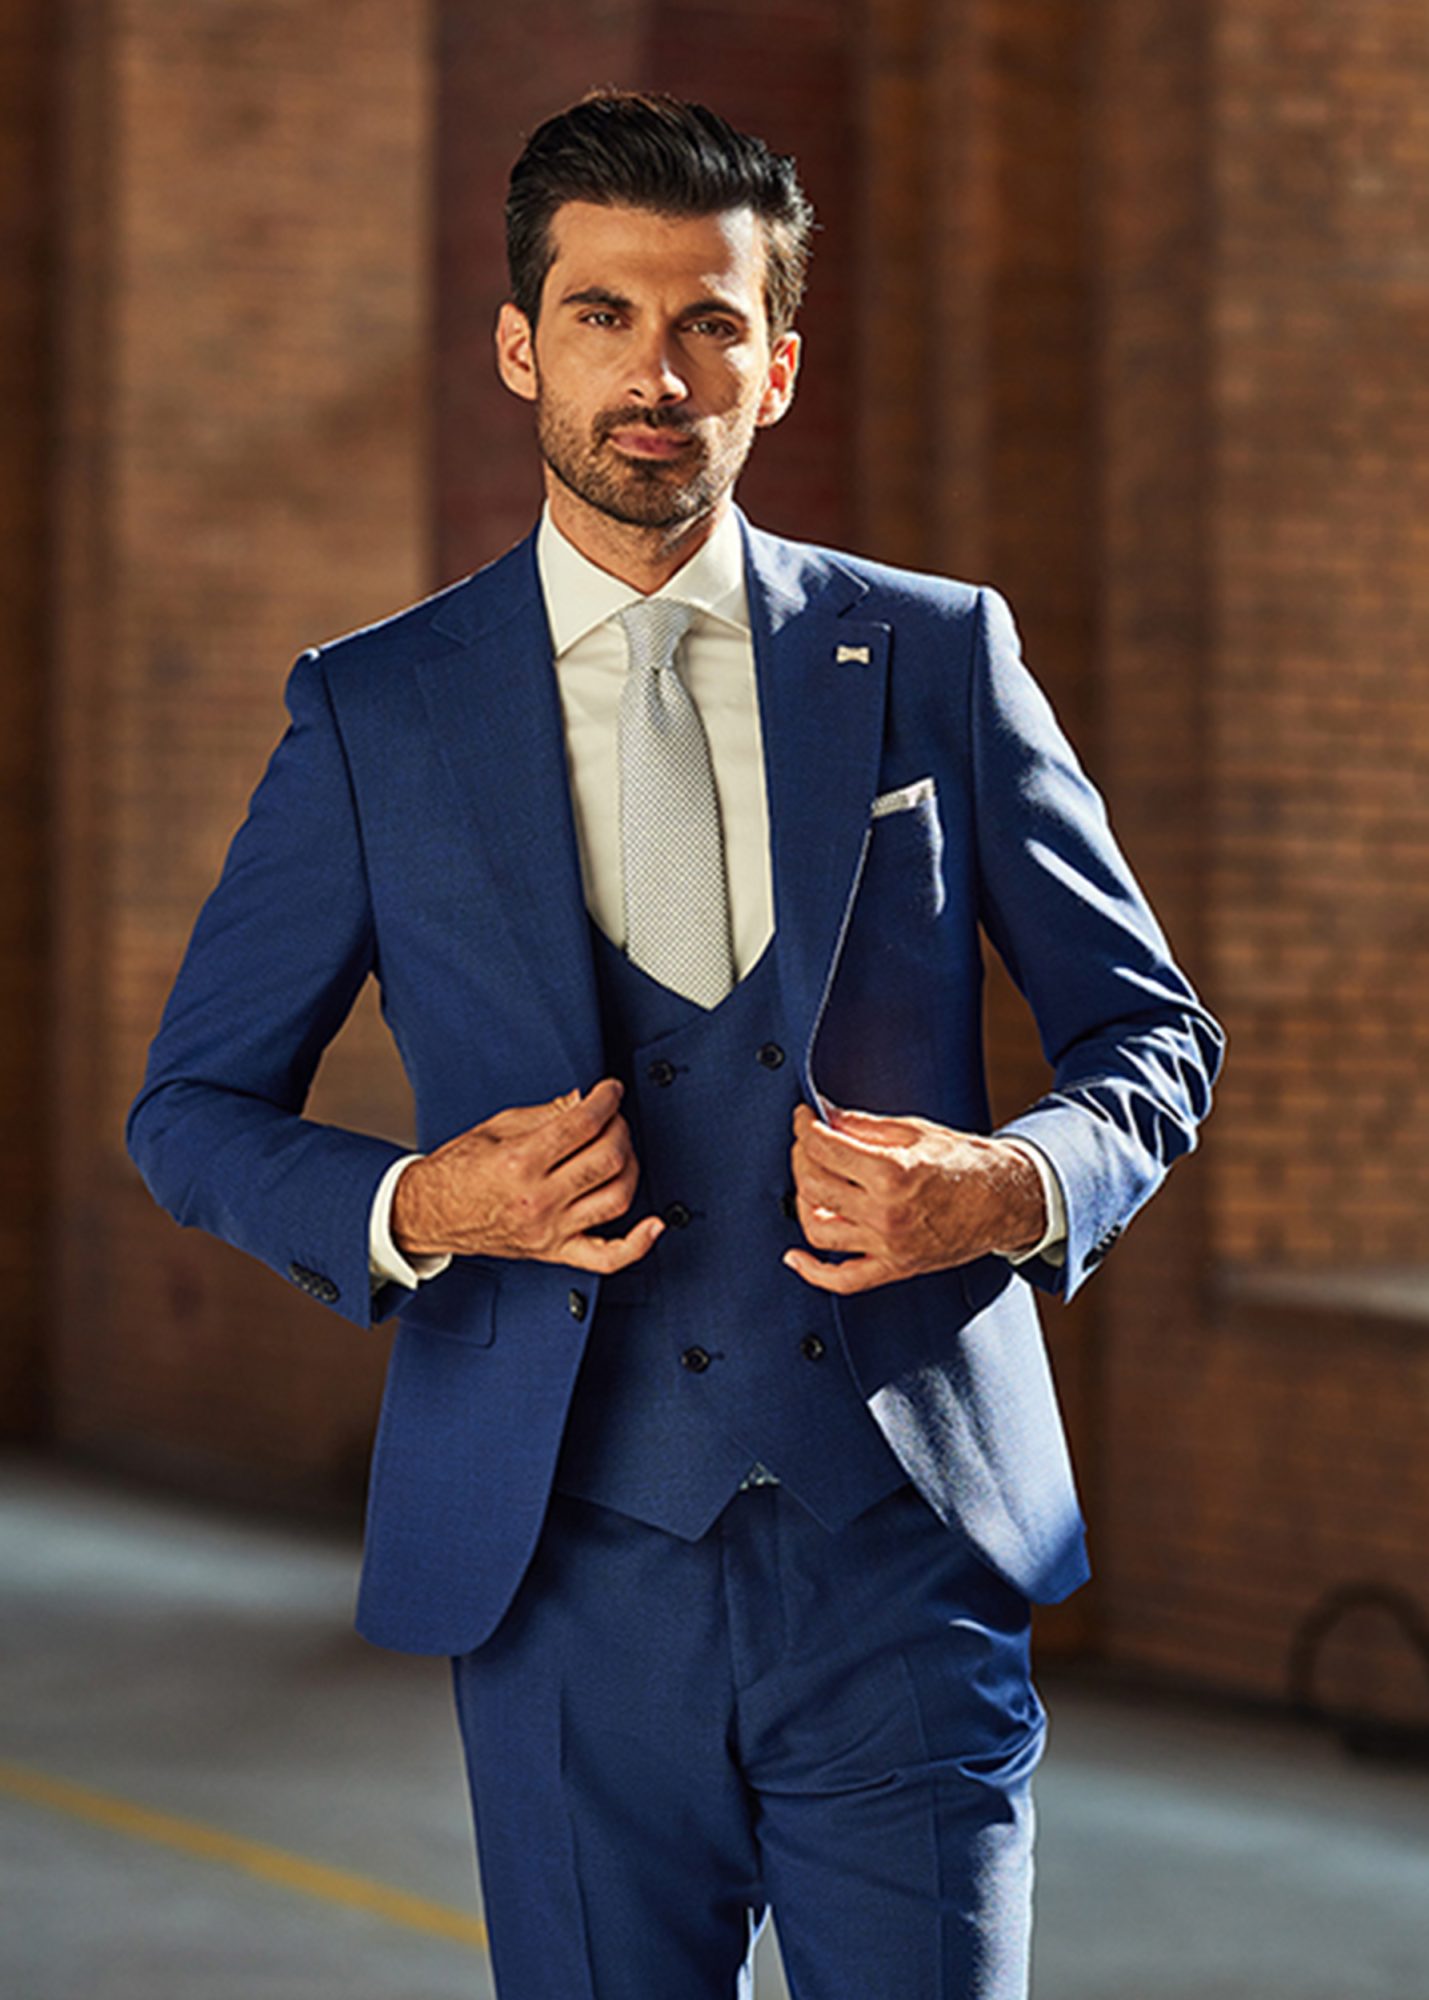 Herrenanzug in Royalblau mit farblich abgestimmter, hellblauen Krawatte und Einstecktuch.